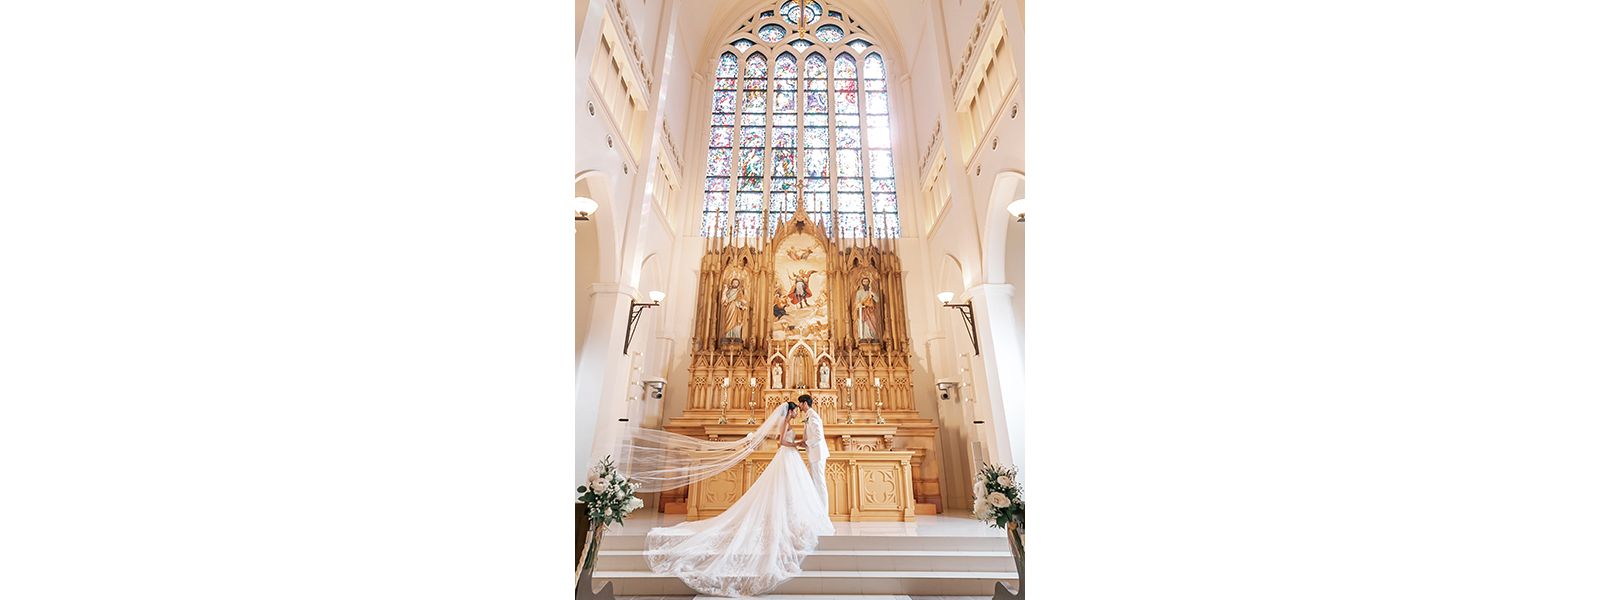 花嫁の憧れが詰まった大聖堂に注目
海外リゾートで過ごすような一日を実現